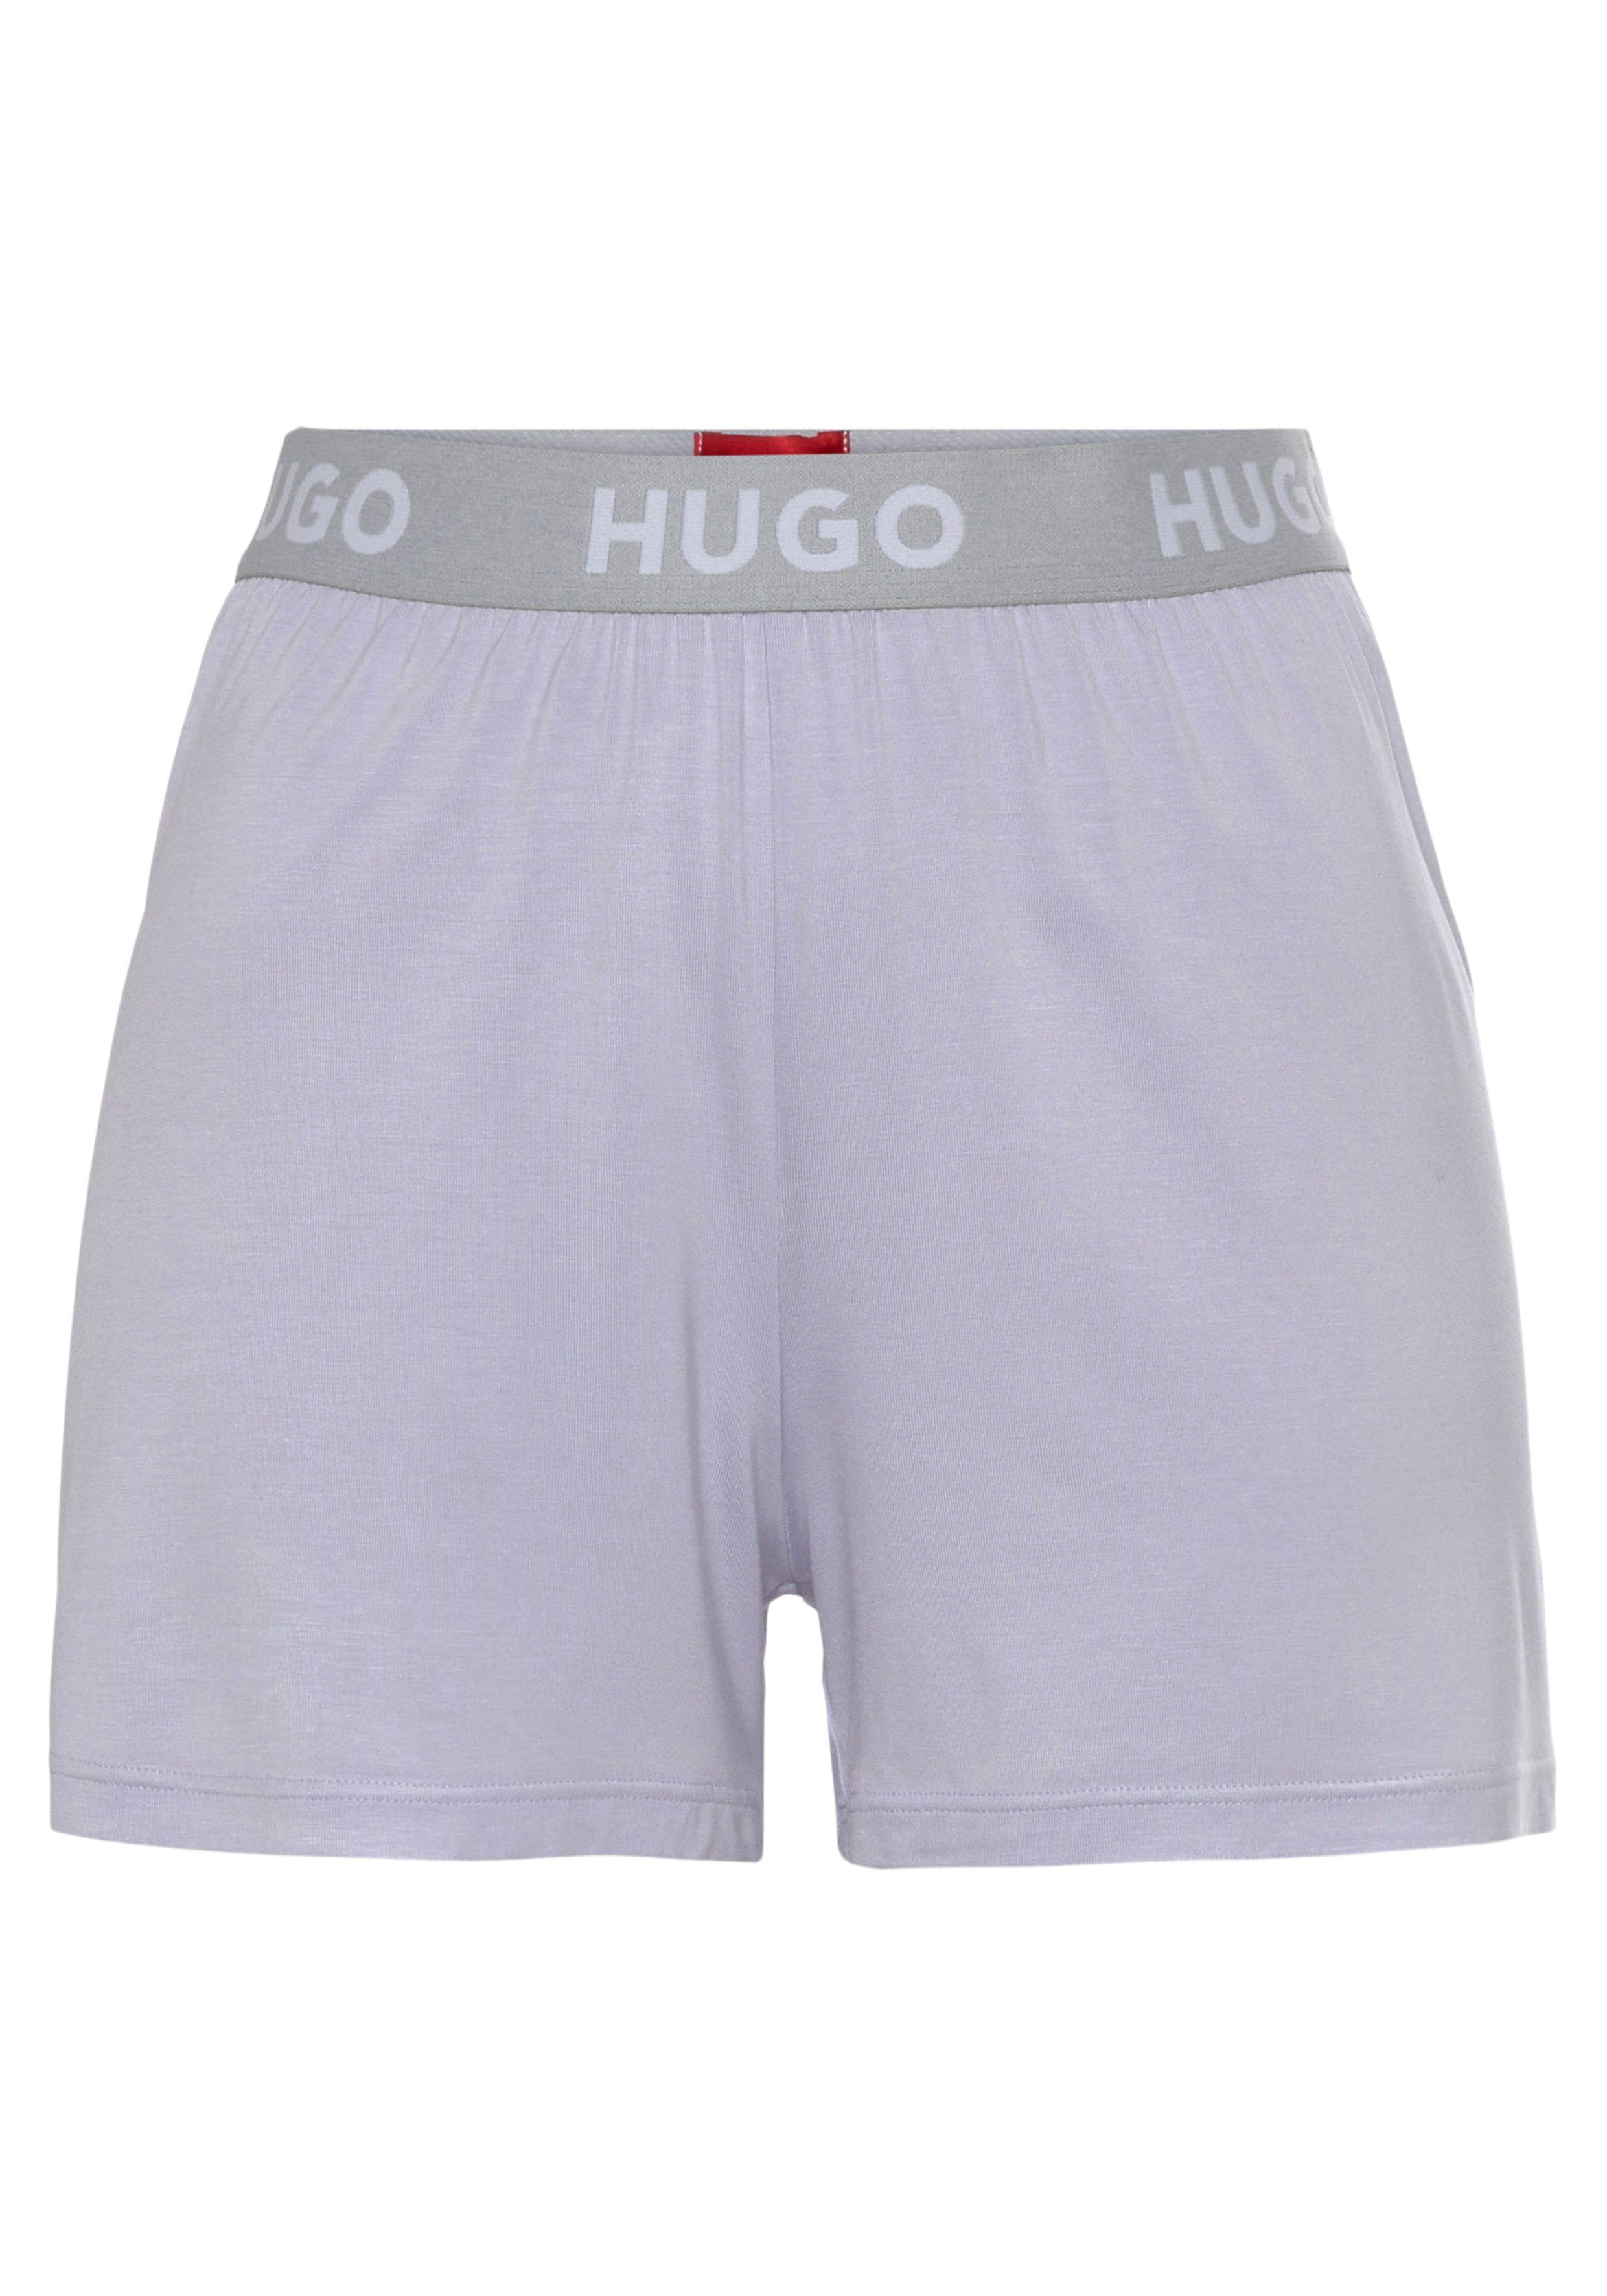 Neue Ware mit Bonus HUGO Schlafshorts UNITE_SHORTS mit Hugo Bund Logo-Elastiktape light_pastel_purple535 am